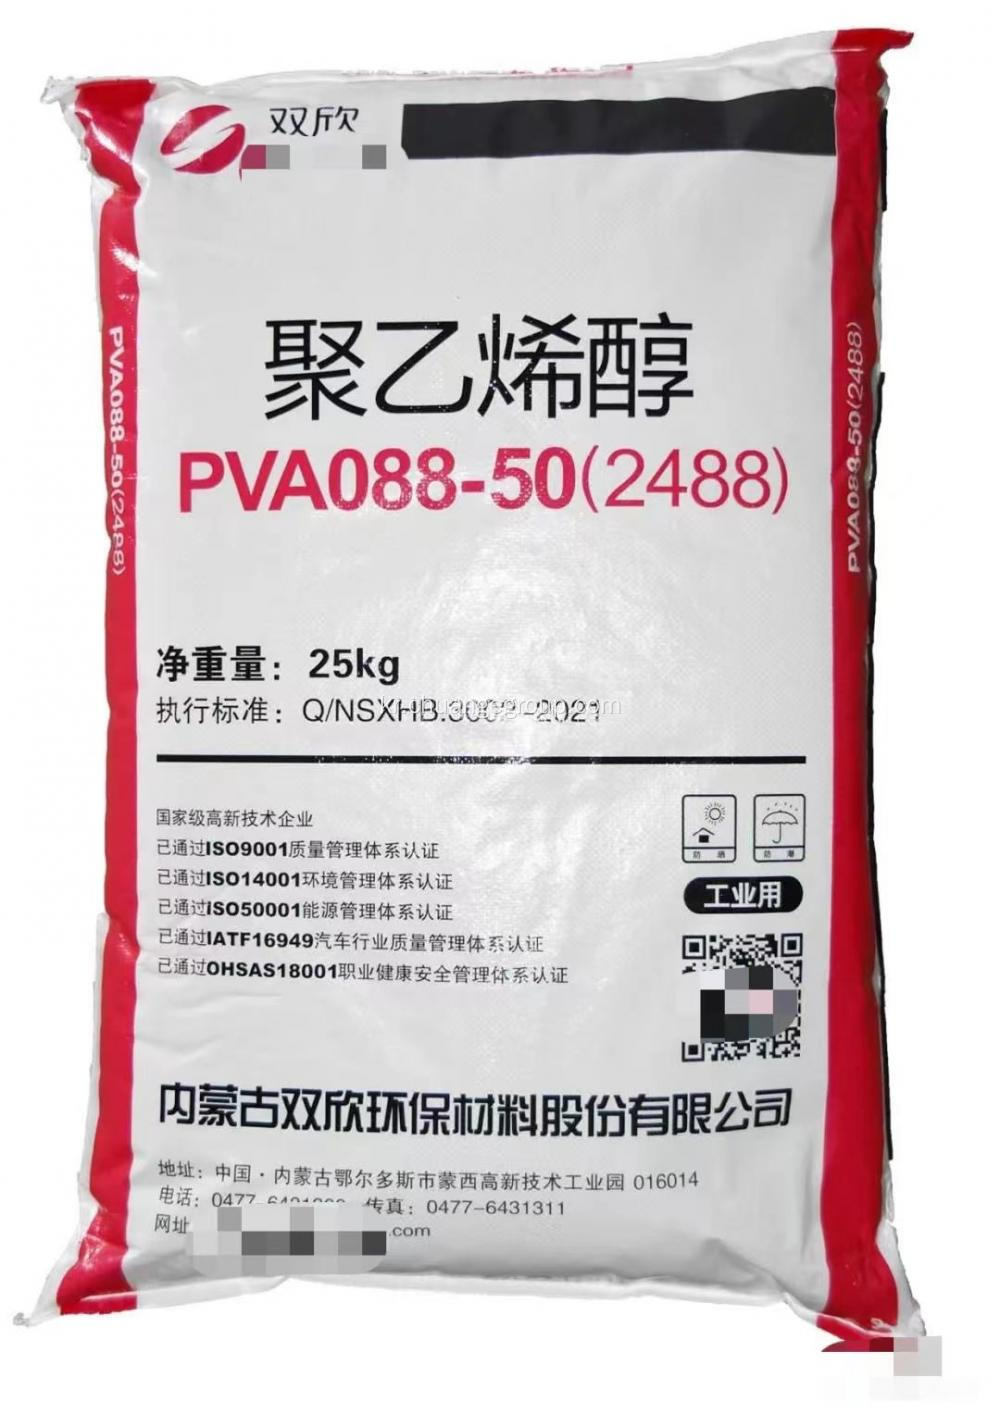 Shuangxin 폴리 비닐 알코올 PVA 2488 섬유 용